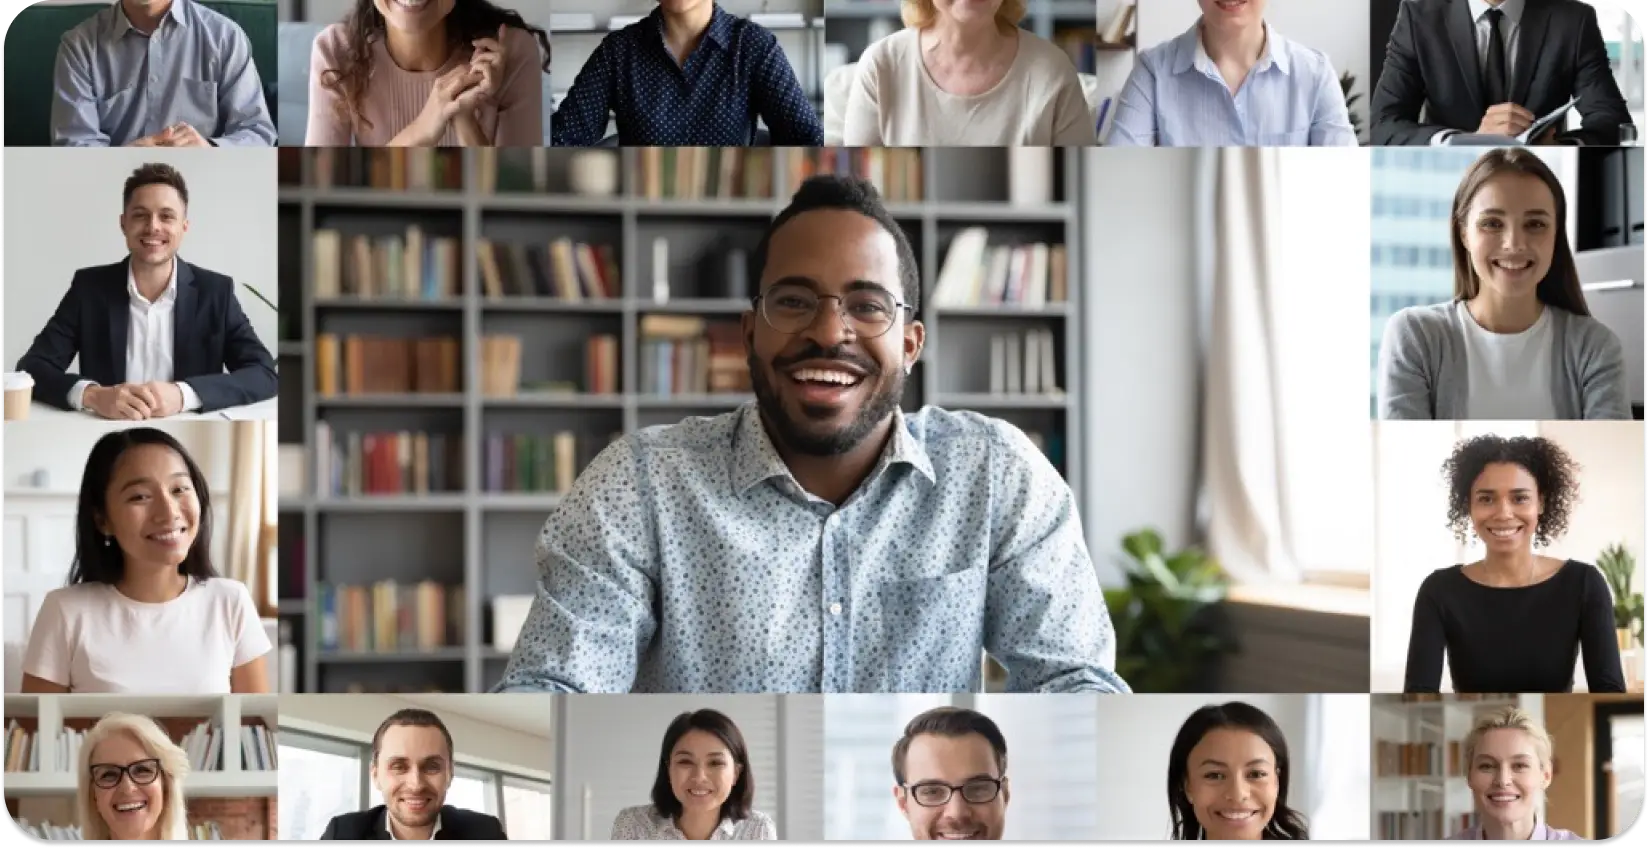 مجموعة من المهنيين المتنوعين في اجتماع افتراضي ، تعرض الشمولية في مكان العمل.